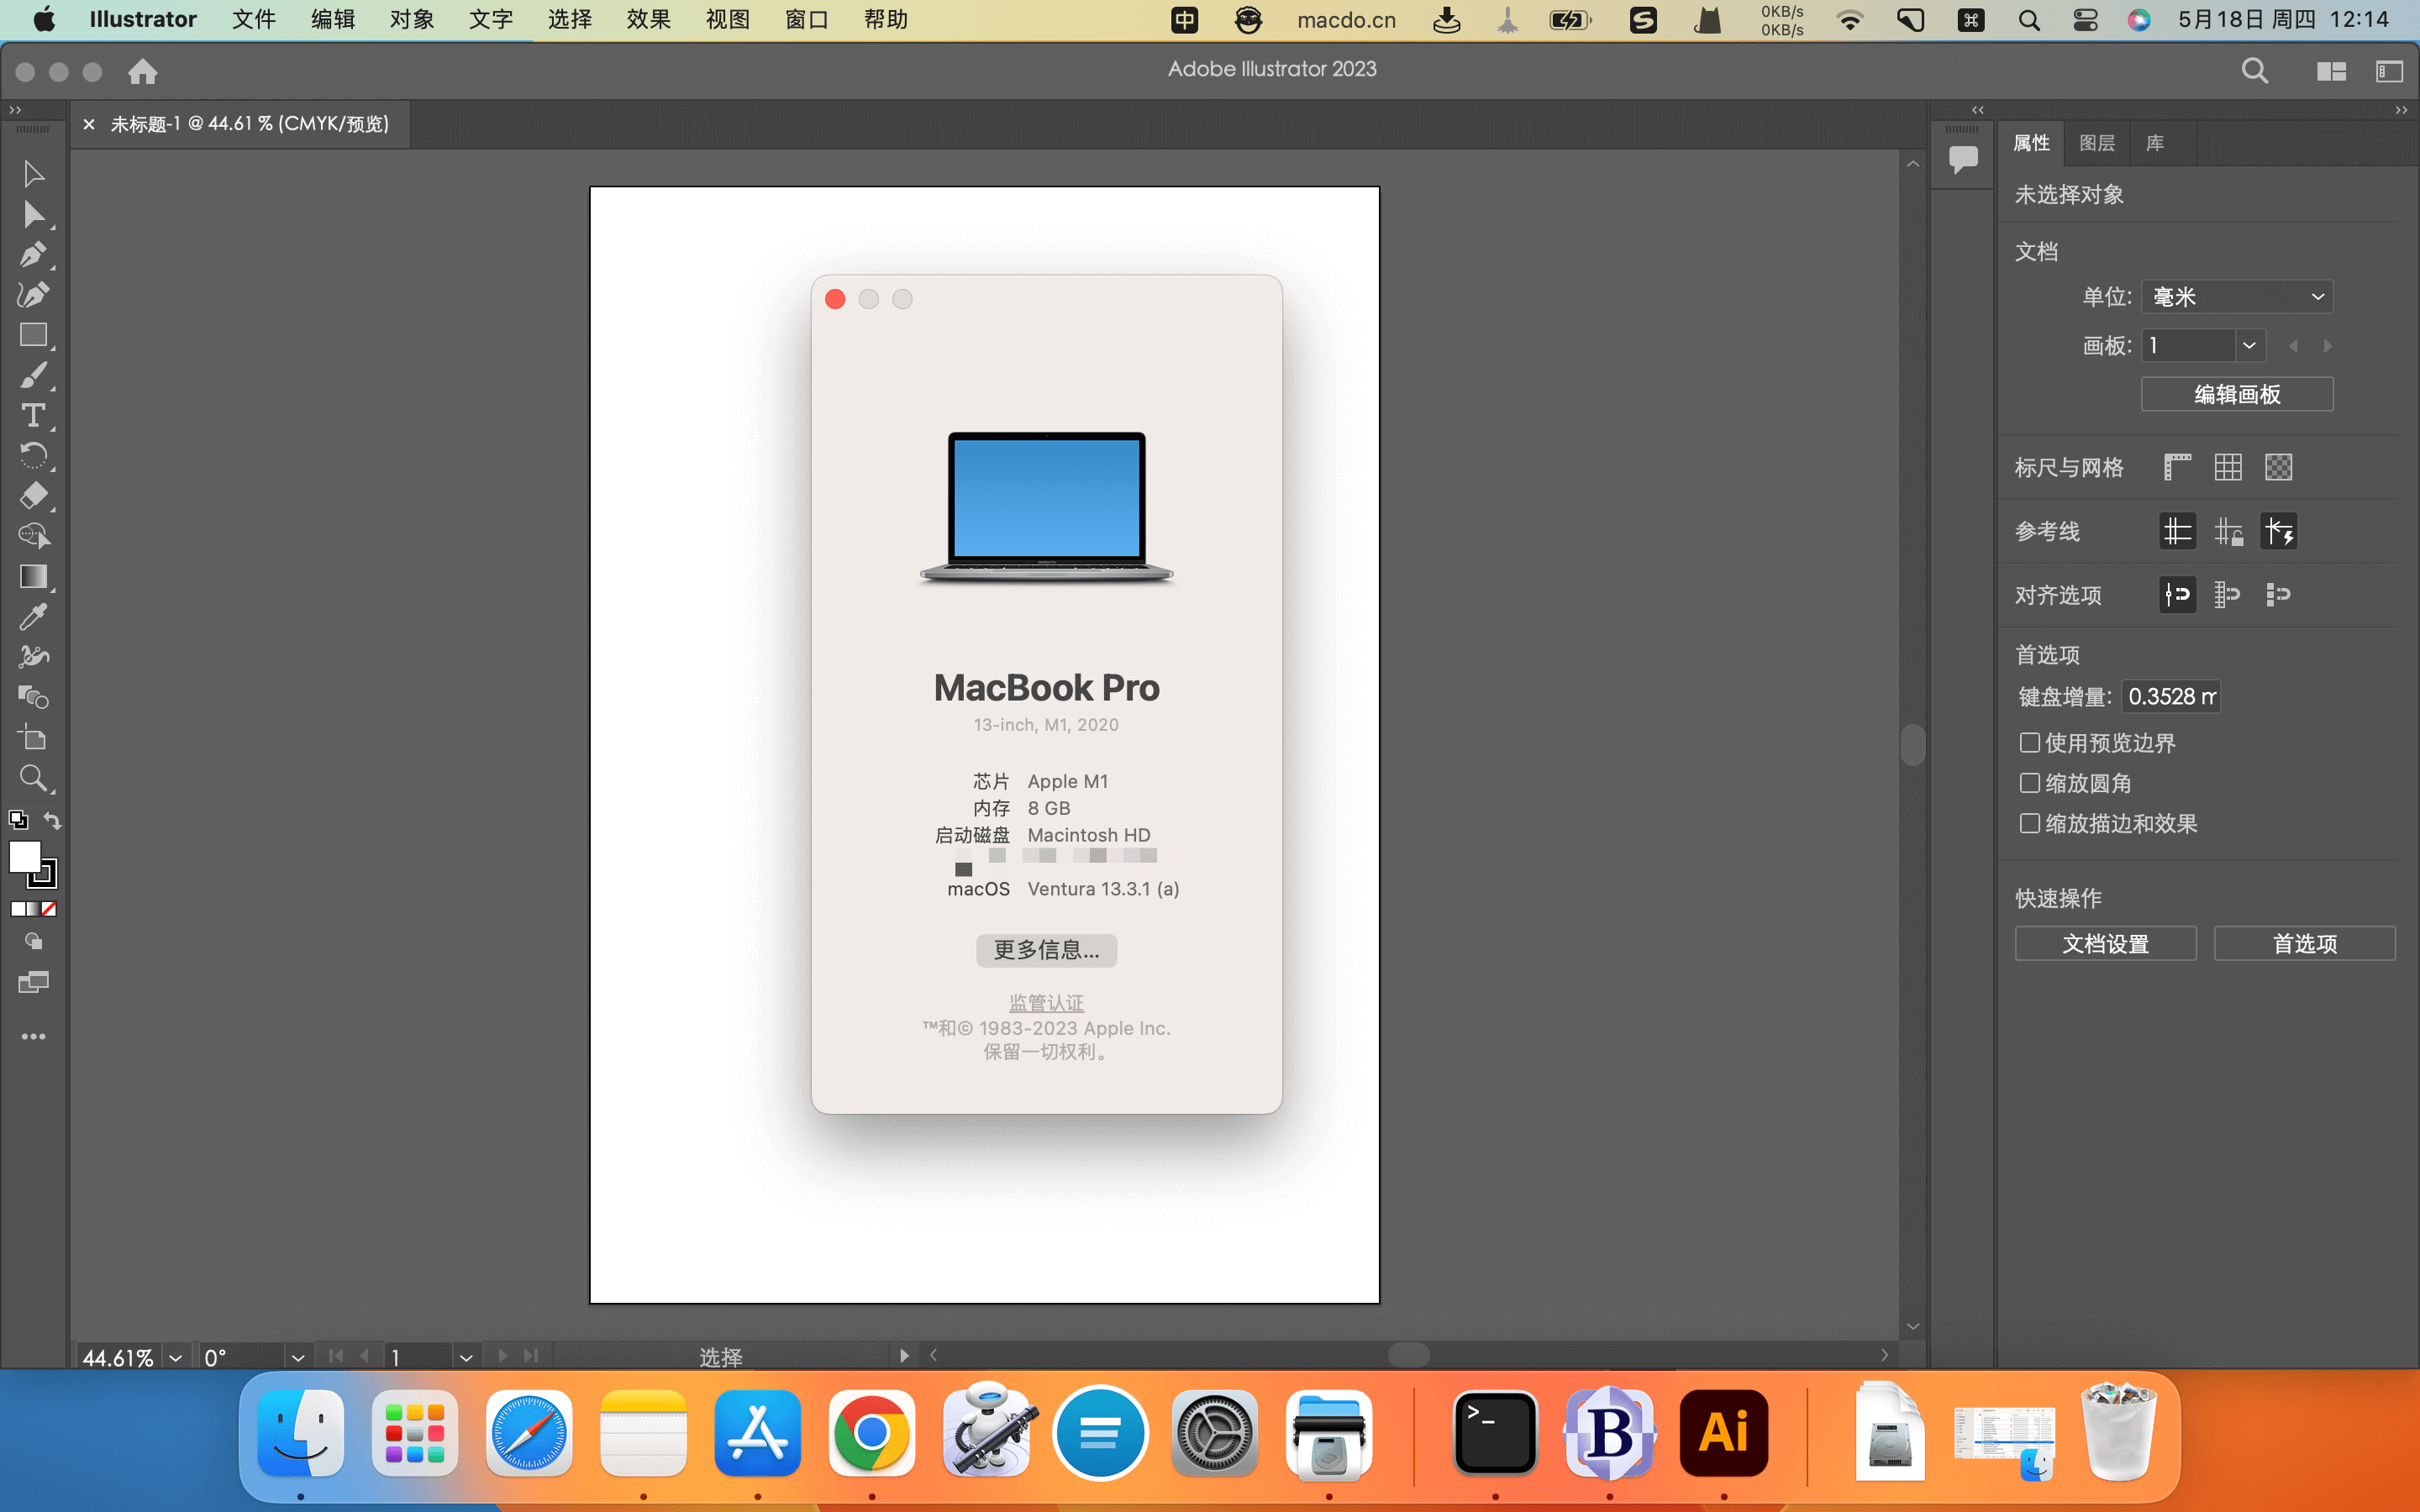 Adobe Illustrator 2023 for Mac v27.0.0 破解激活完整教程 软件教程 第7张